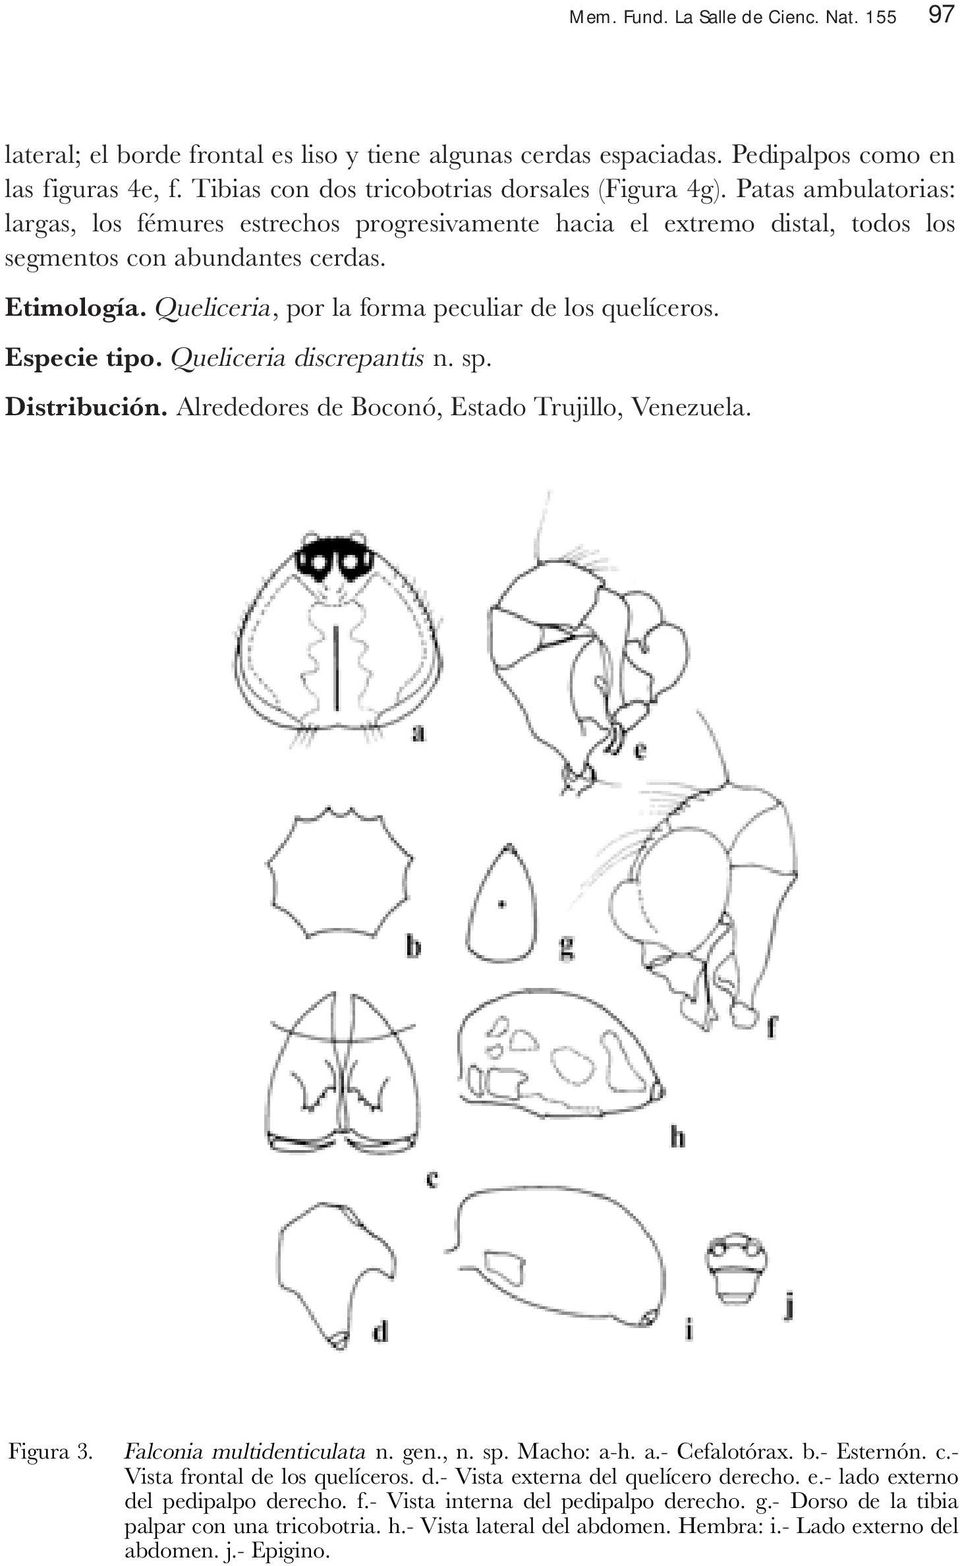 Especie tipo. Queliceria discrepantis n. sp. Distribución. Alrededores de Boconó, Estado Trujillo, Venezuela. Figura 3. Falconia multidenticulata n. gen., n. sp. Macho: a-h. a.- Cefalotórax. b.